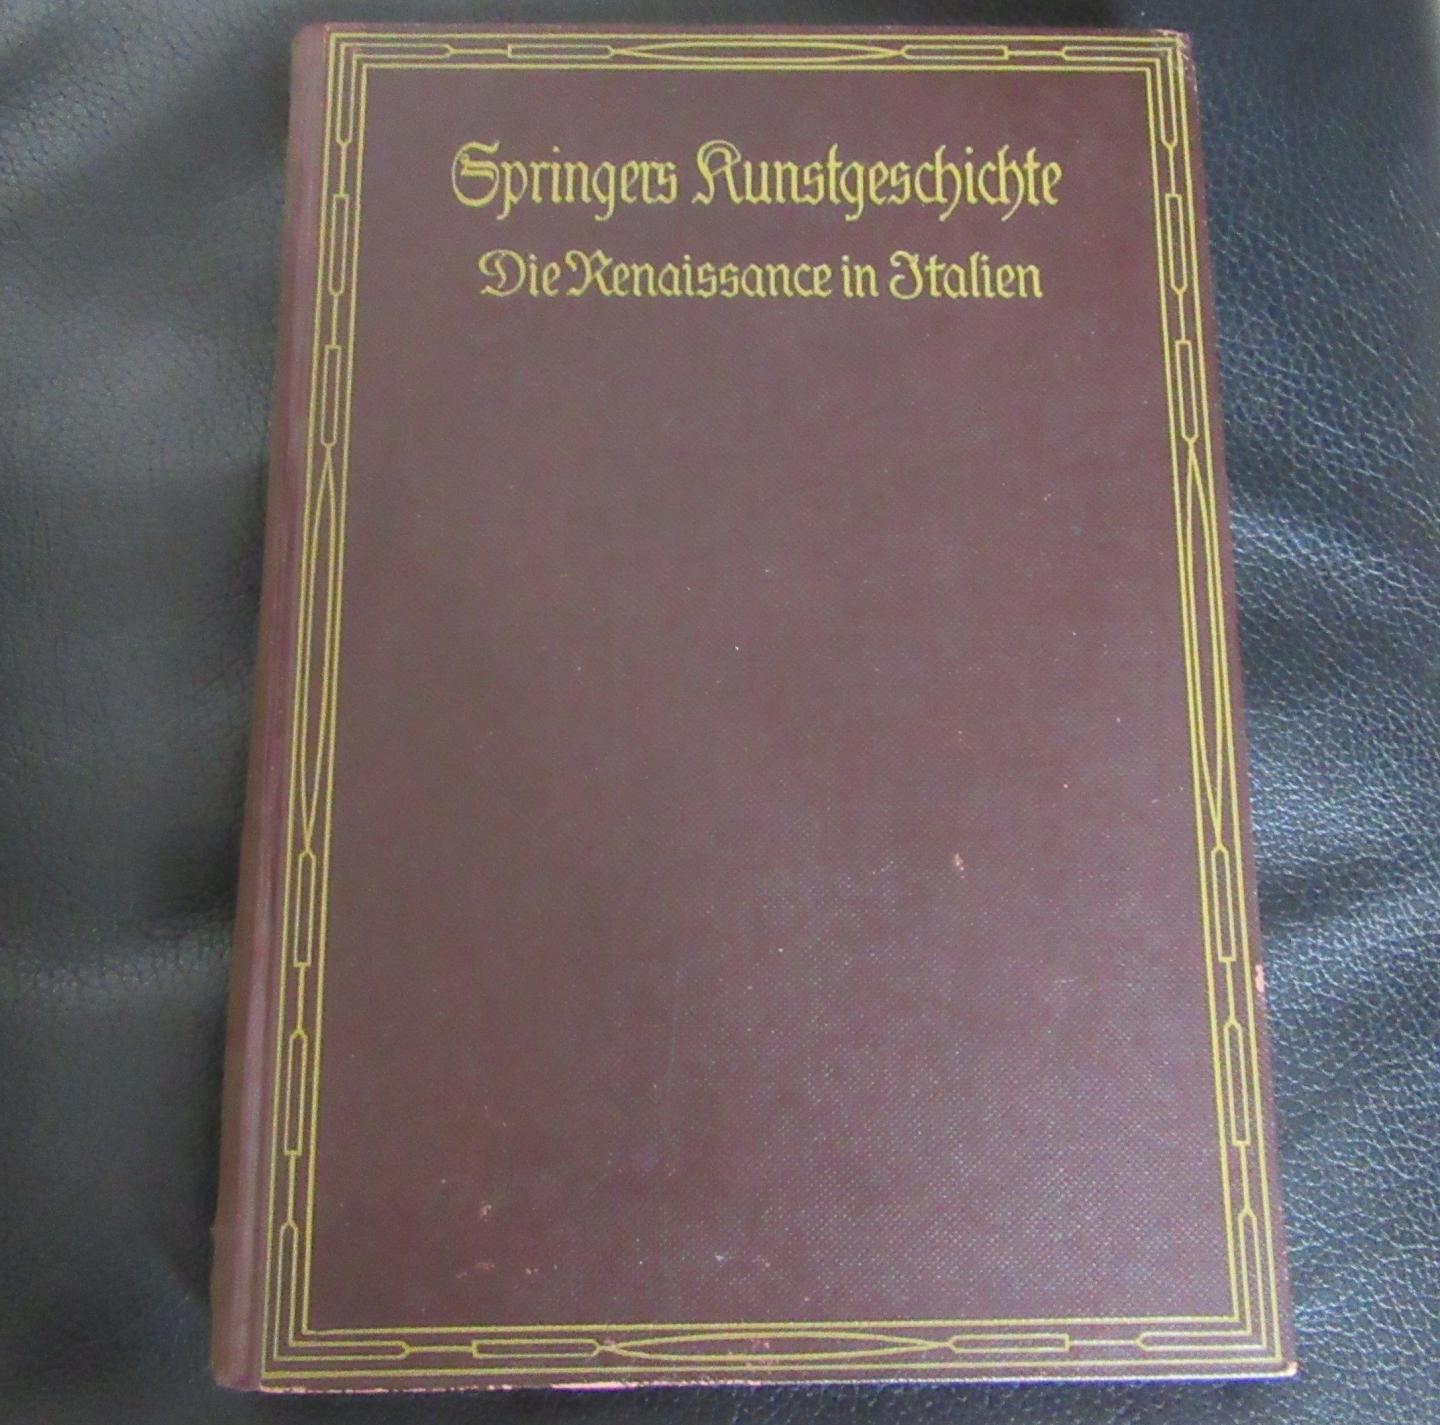 Springer, Anton - 1920 HANDBUCH DER KUNSTGESCHICHTE. BAND III. DIE RENAISSANCE IN ITALIEN